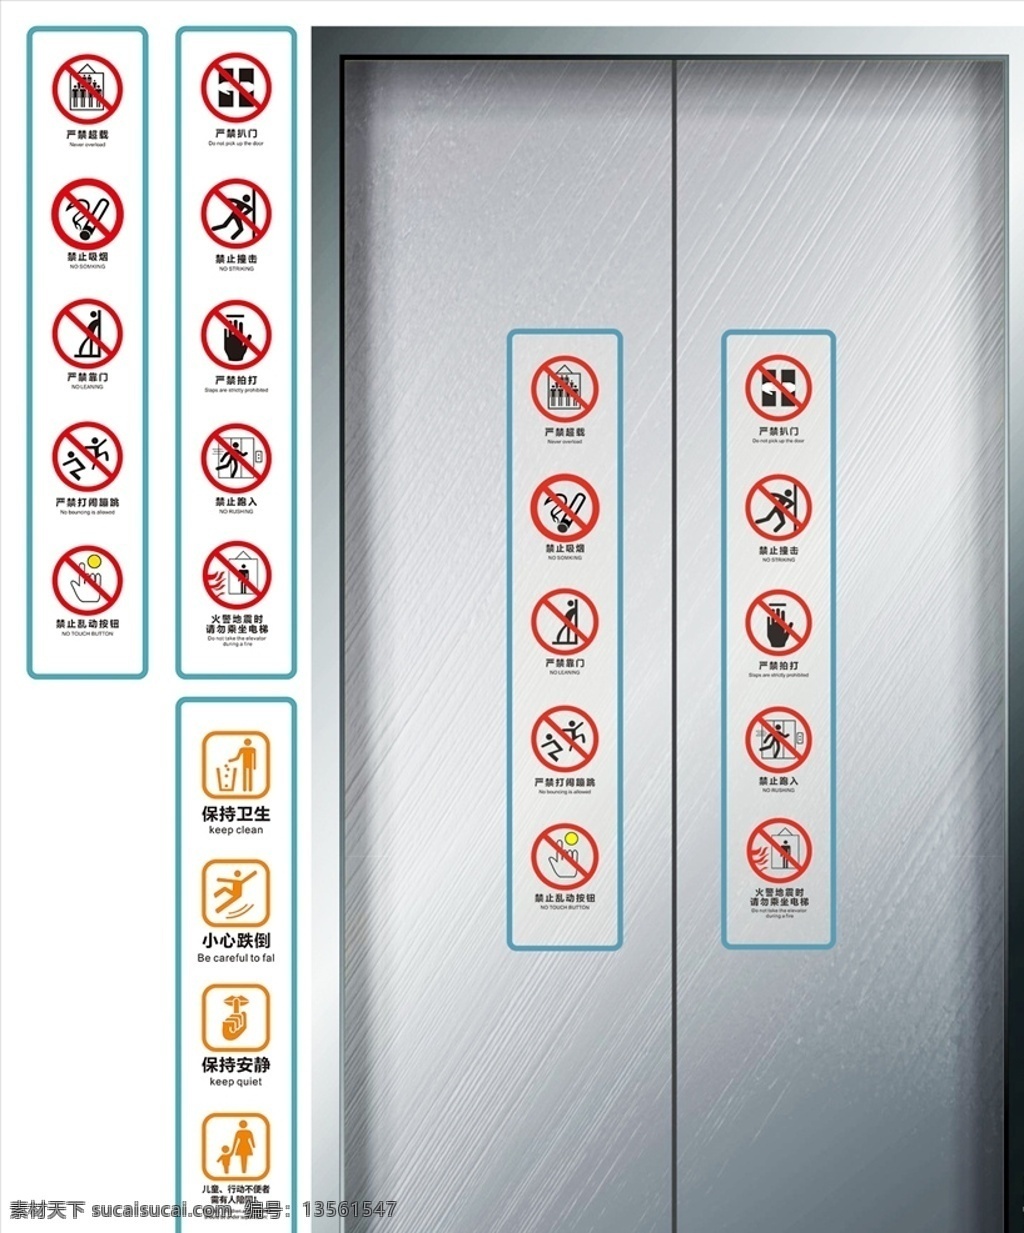 电梯提示标志 电梯提醒 电梯提示语 电梯提示牌 电梯警示牌 电梯警示标志 电梯温馨提示 电梯请勿追打 电梯请勿超载 电梯按钮 倚靠电梯门